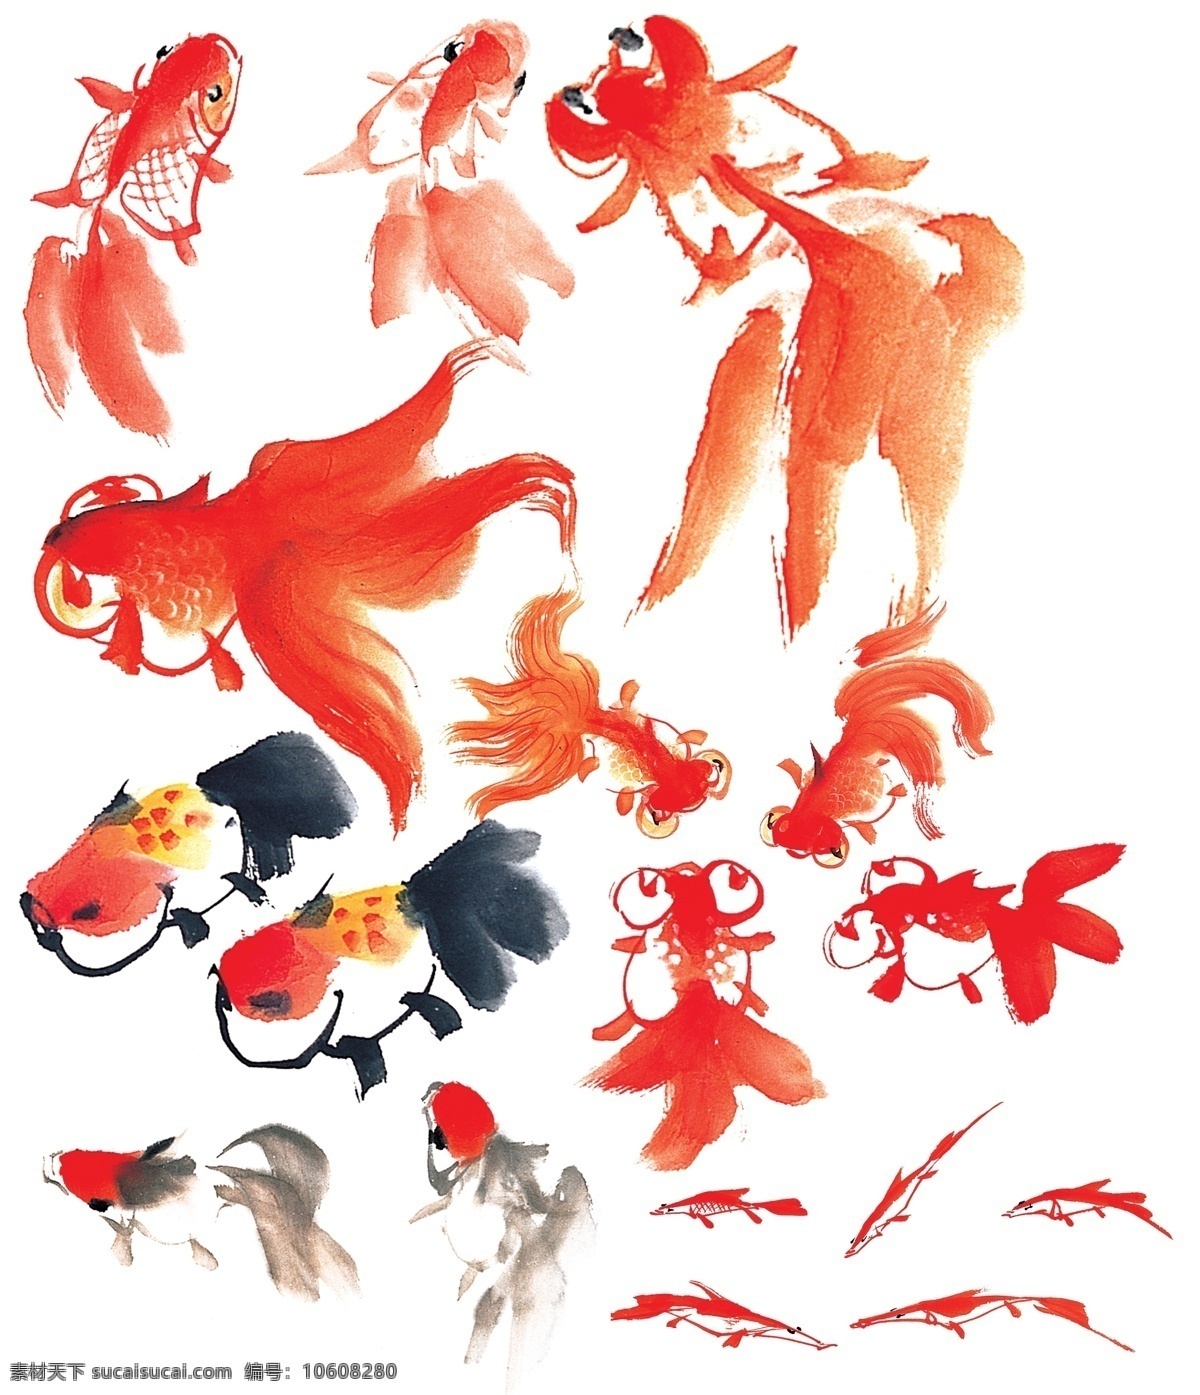 中国画金鱼 手绘动物 卡通动物 动物插画 中国风动物 水墨画动物 水墨画金鱼 金鱼绘画 金鱼水墨画 写意画金鱼 金鱼写意画 中国风绘画 海洋生物 鱼绘画 红色金鱼 油画绘画美术